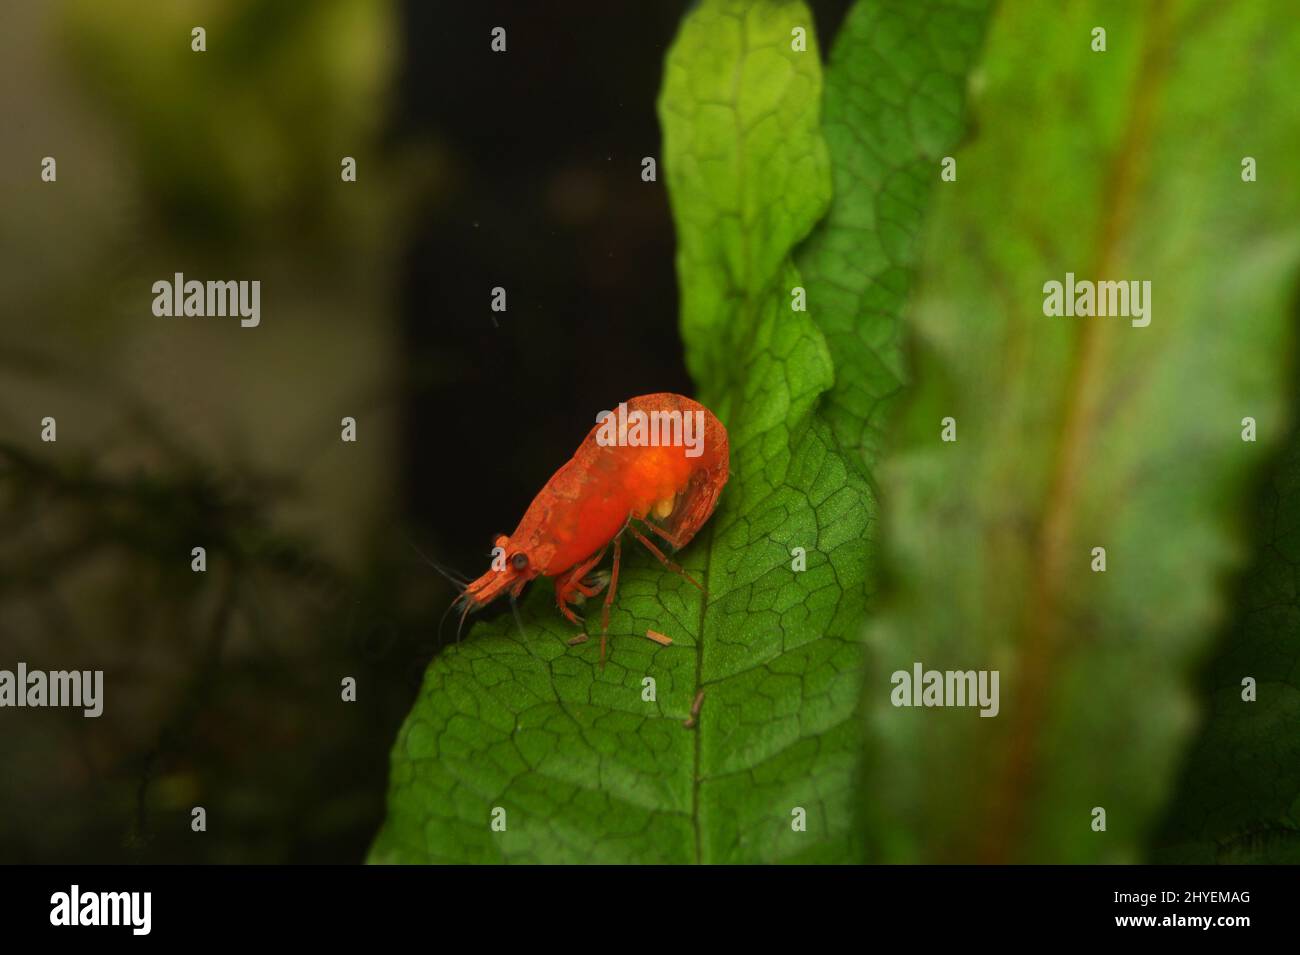 Closeup of orange Neocaridina Shrimp on a green leaf Stock Photo